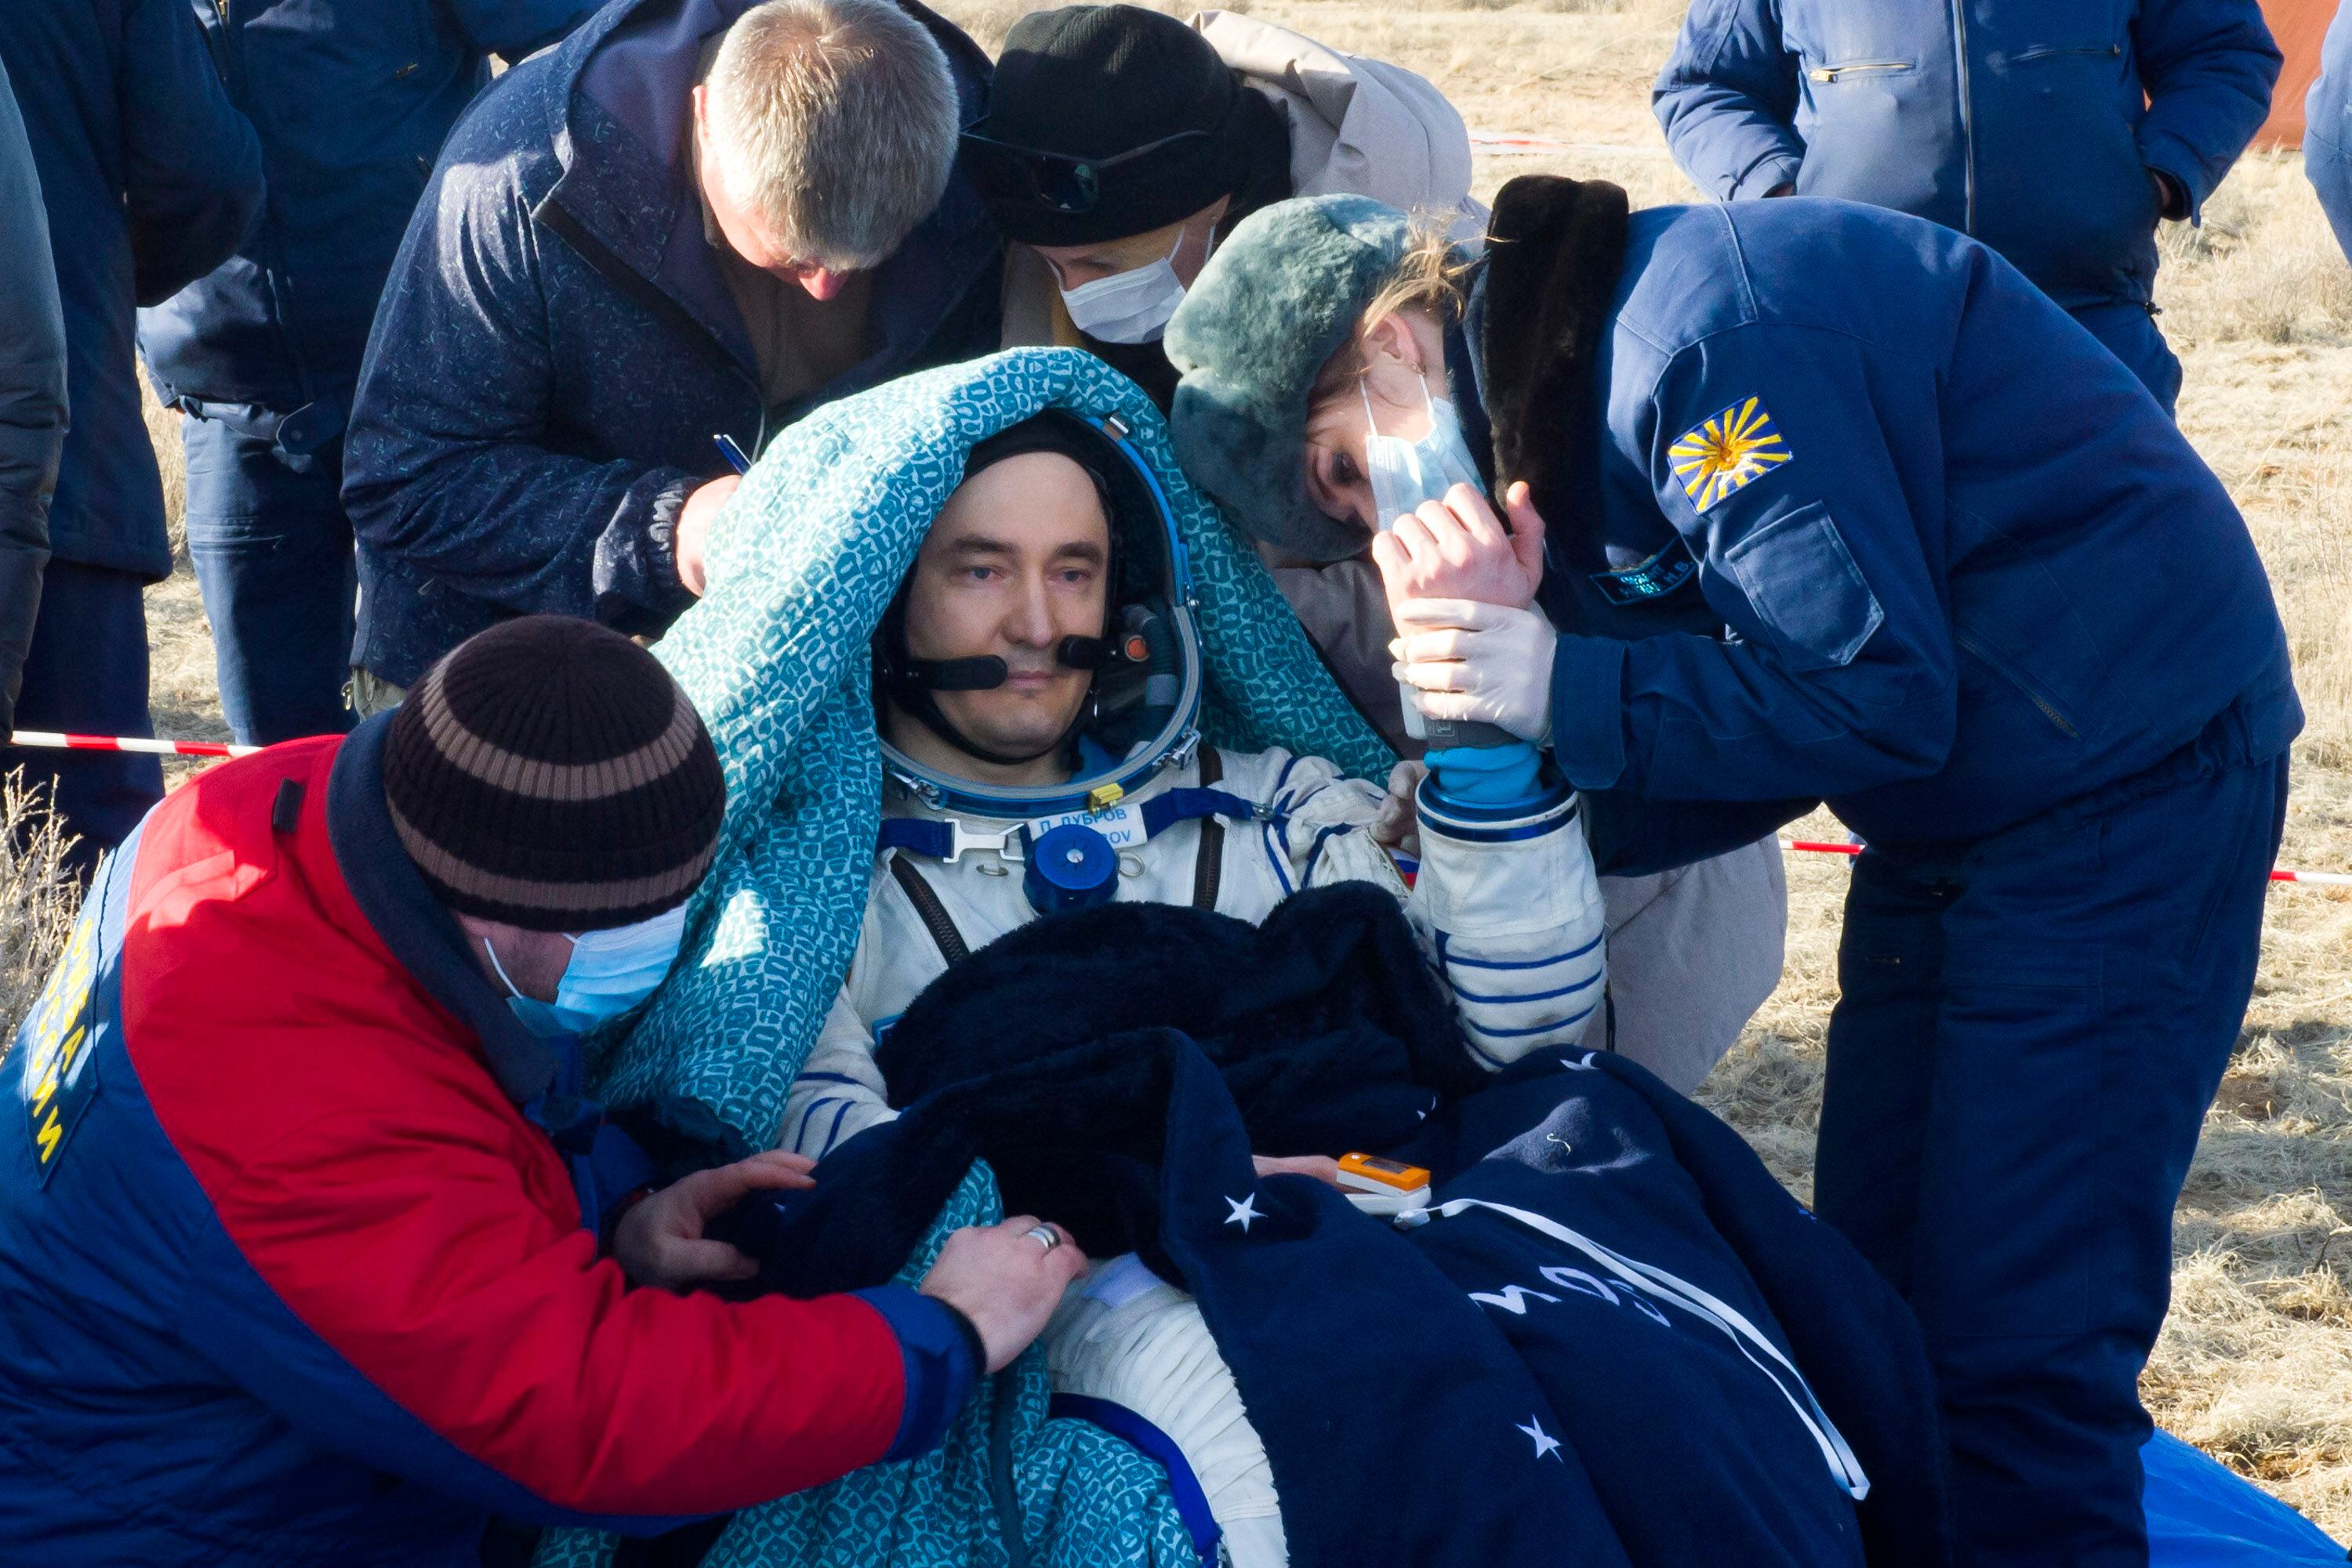 El cosmonauta ruso Pyotr Dubrov se somete a un control médico poco después del aterrizaje de la cápsula espacial Soyuz MS-19 en un área remota en las afueras de Dzhezkazgan (Zhezkazgan), Kazajstán, el 30 de marzo de 2022. (Foto de Irina SPEKTOR / Agencia Espacial Rusa Roscosmos / AFP)